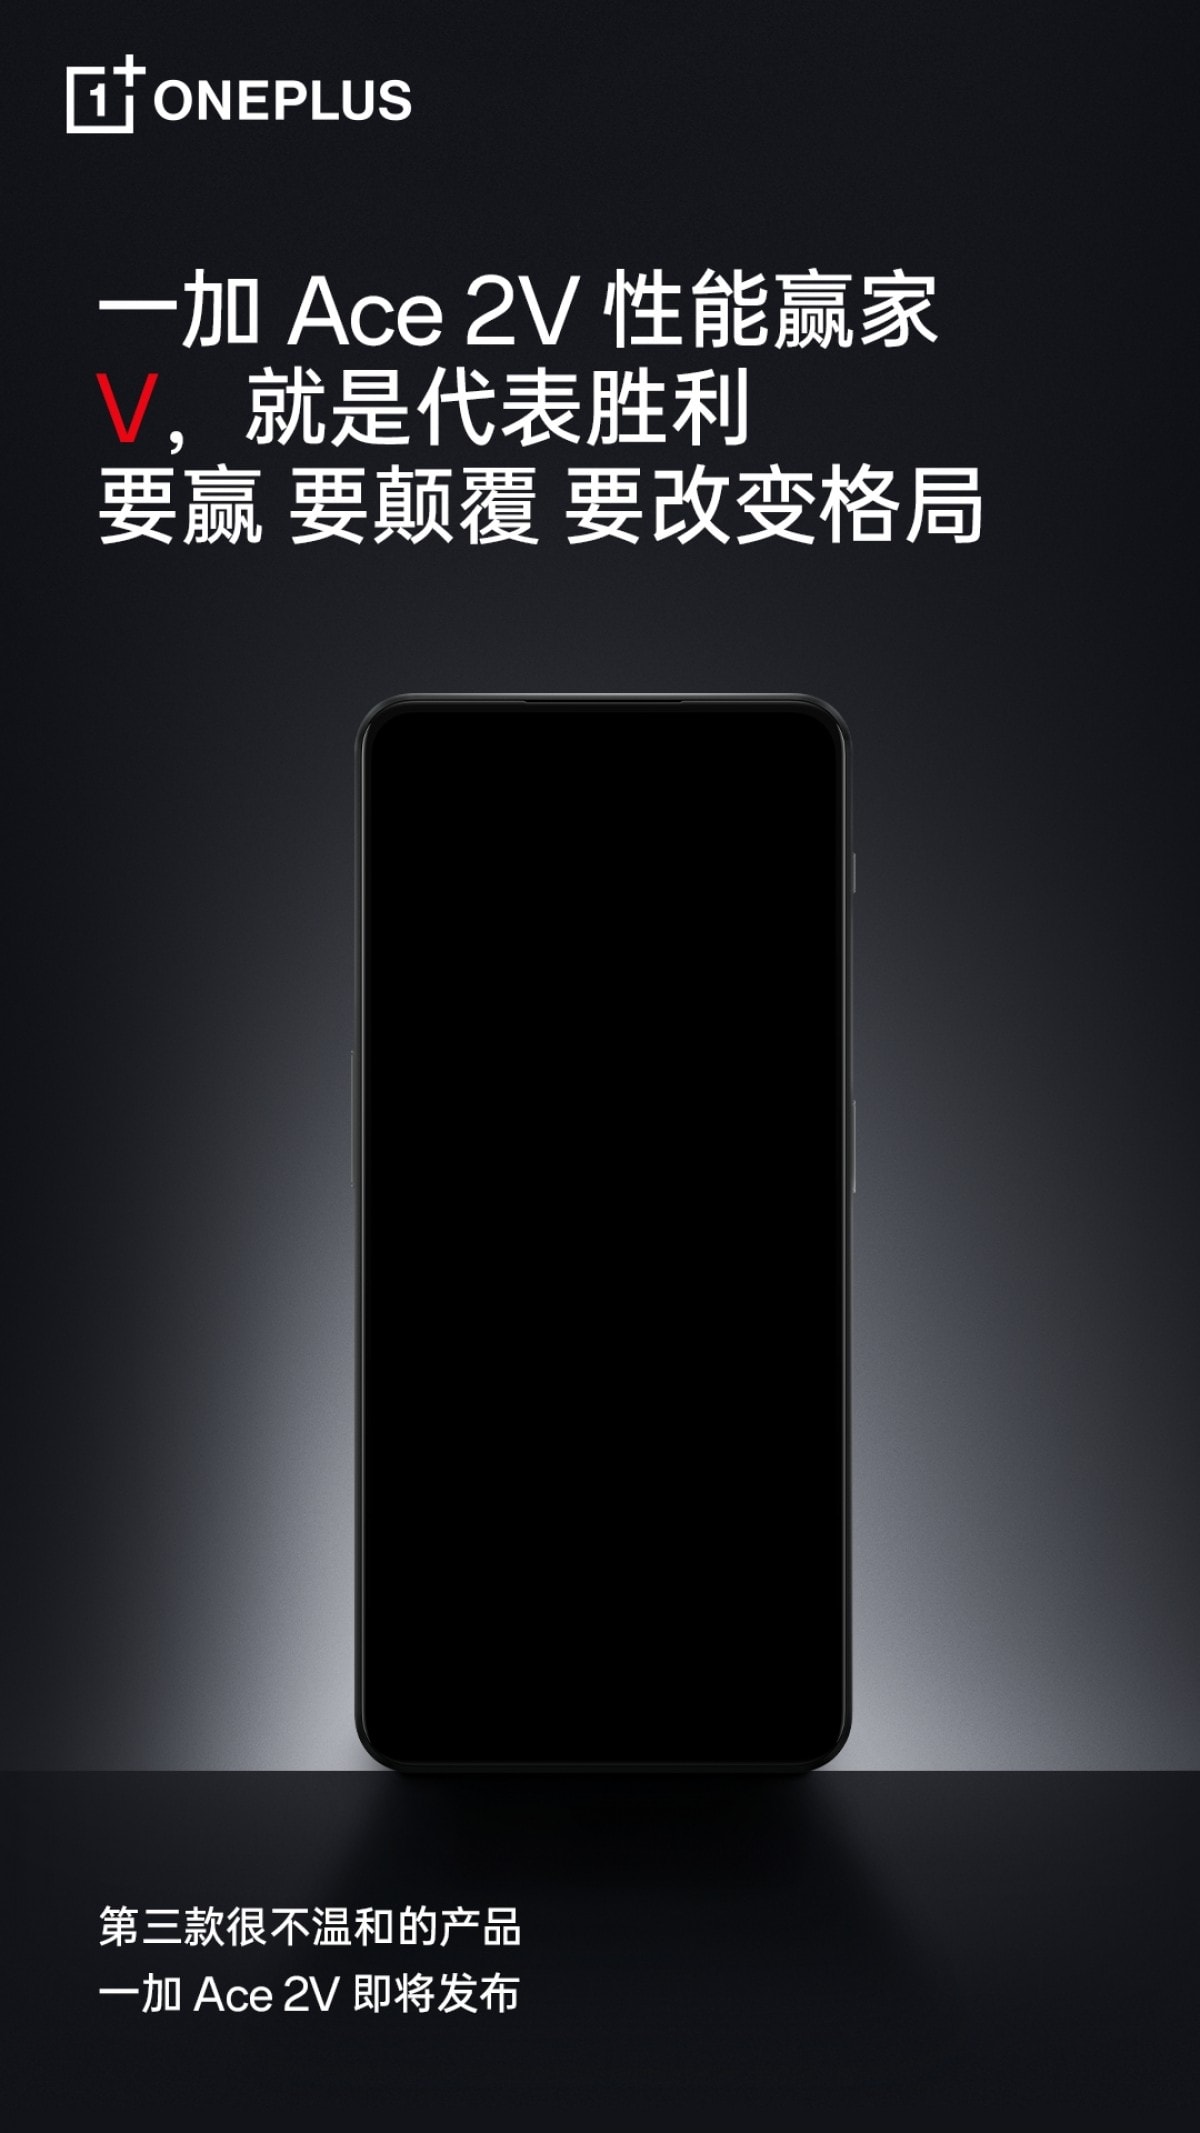 OnePlus Ace 2V là tên chính thức cho phiên bản trang bị chip Dimensity 9000